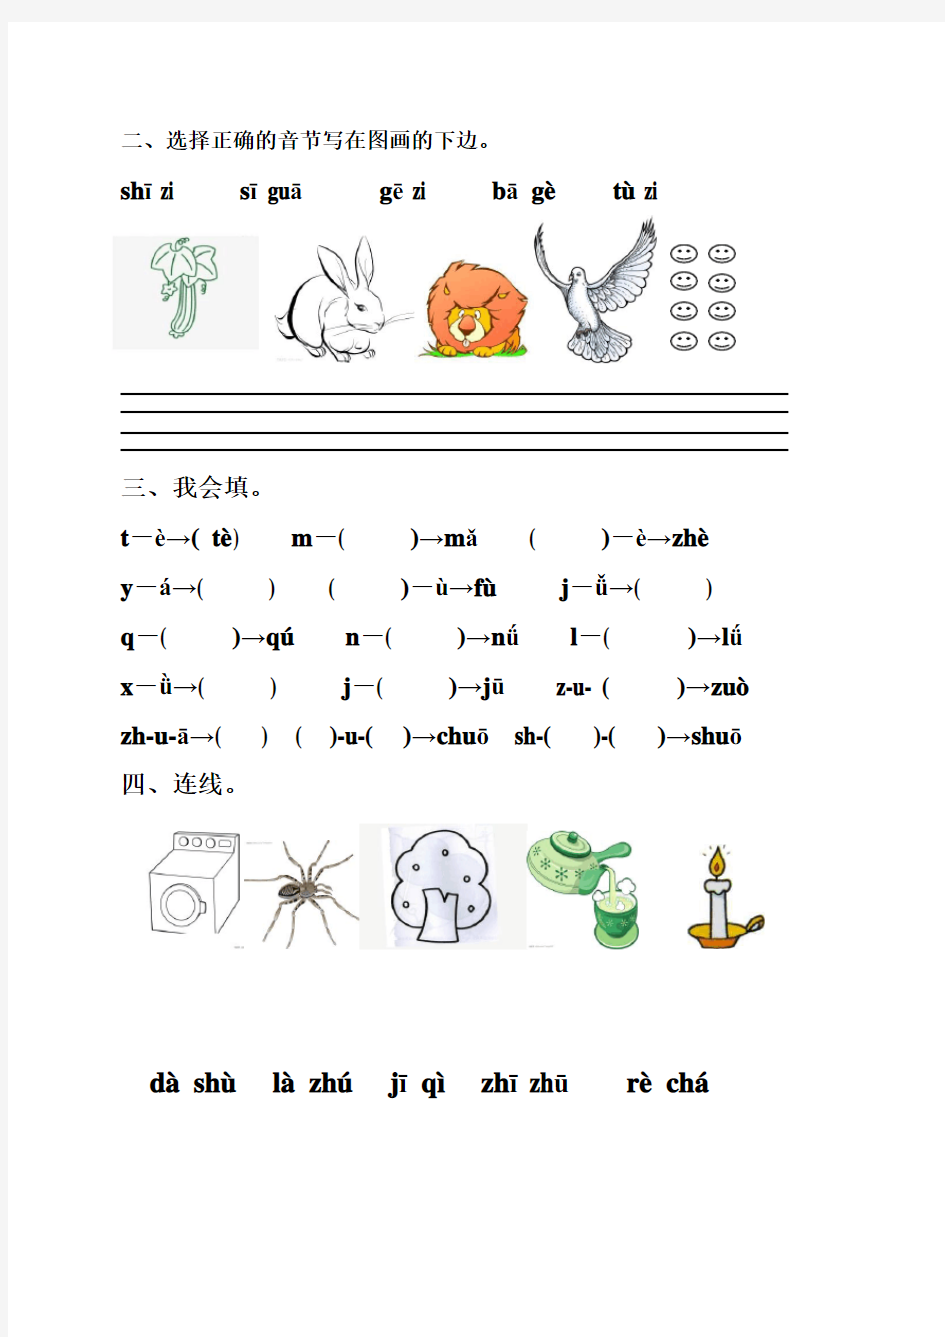 一年级汉语拼音练习题合集资料讲解